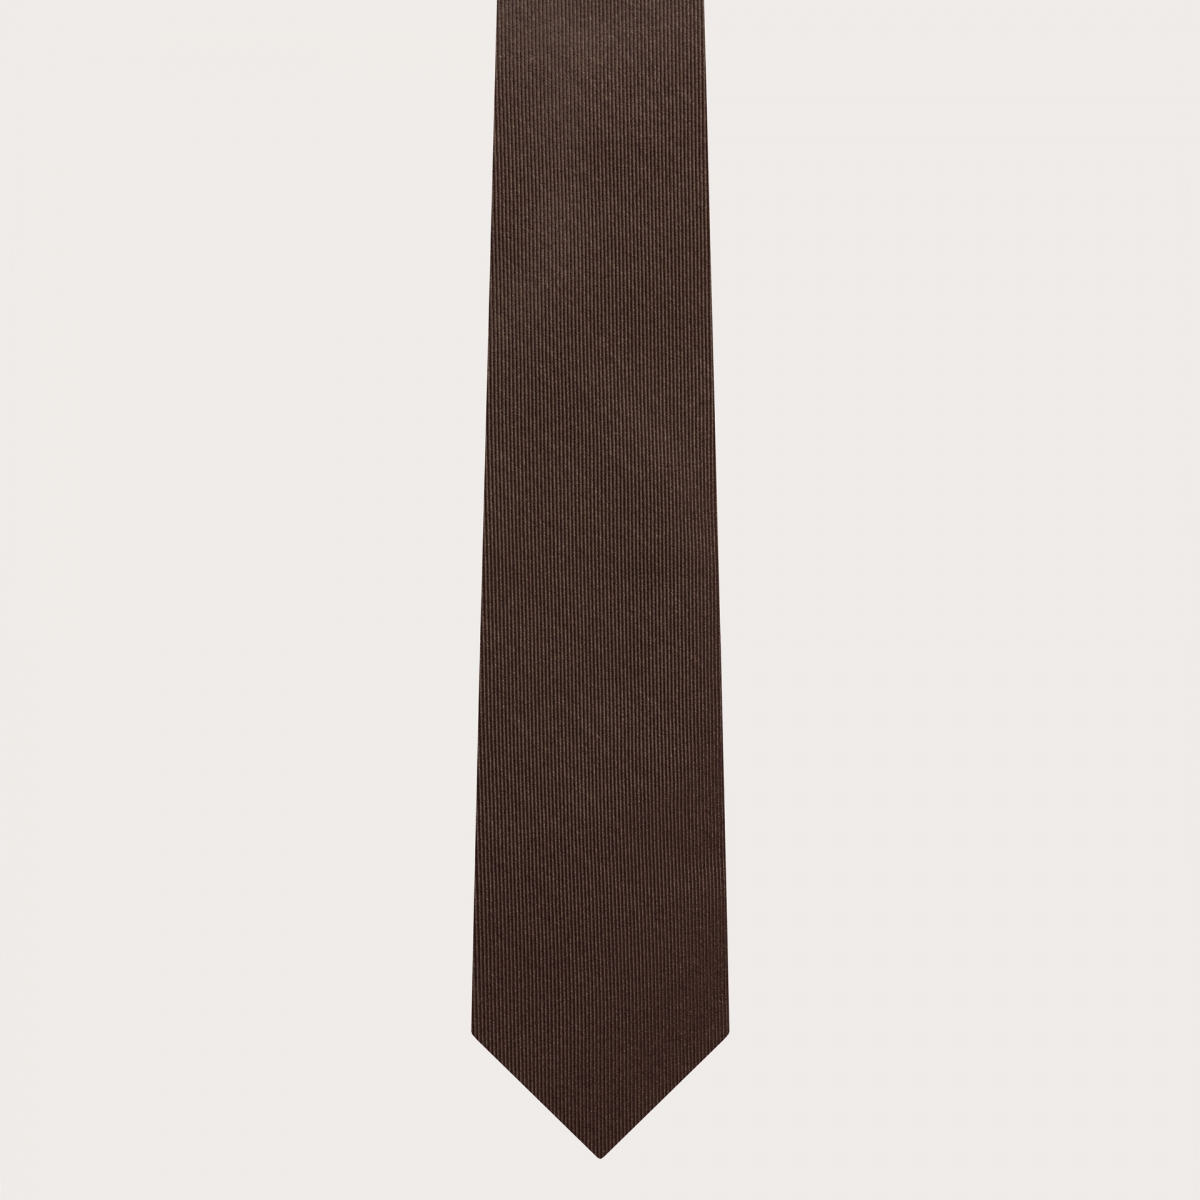 BRUCLE Ensemble complet bretelles fines, cravate et pochette en soie marron